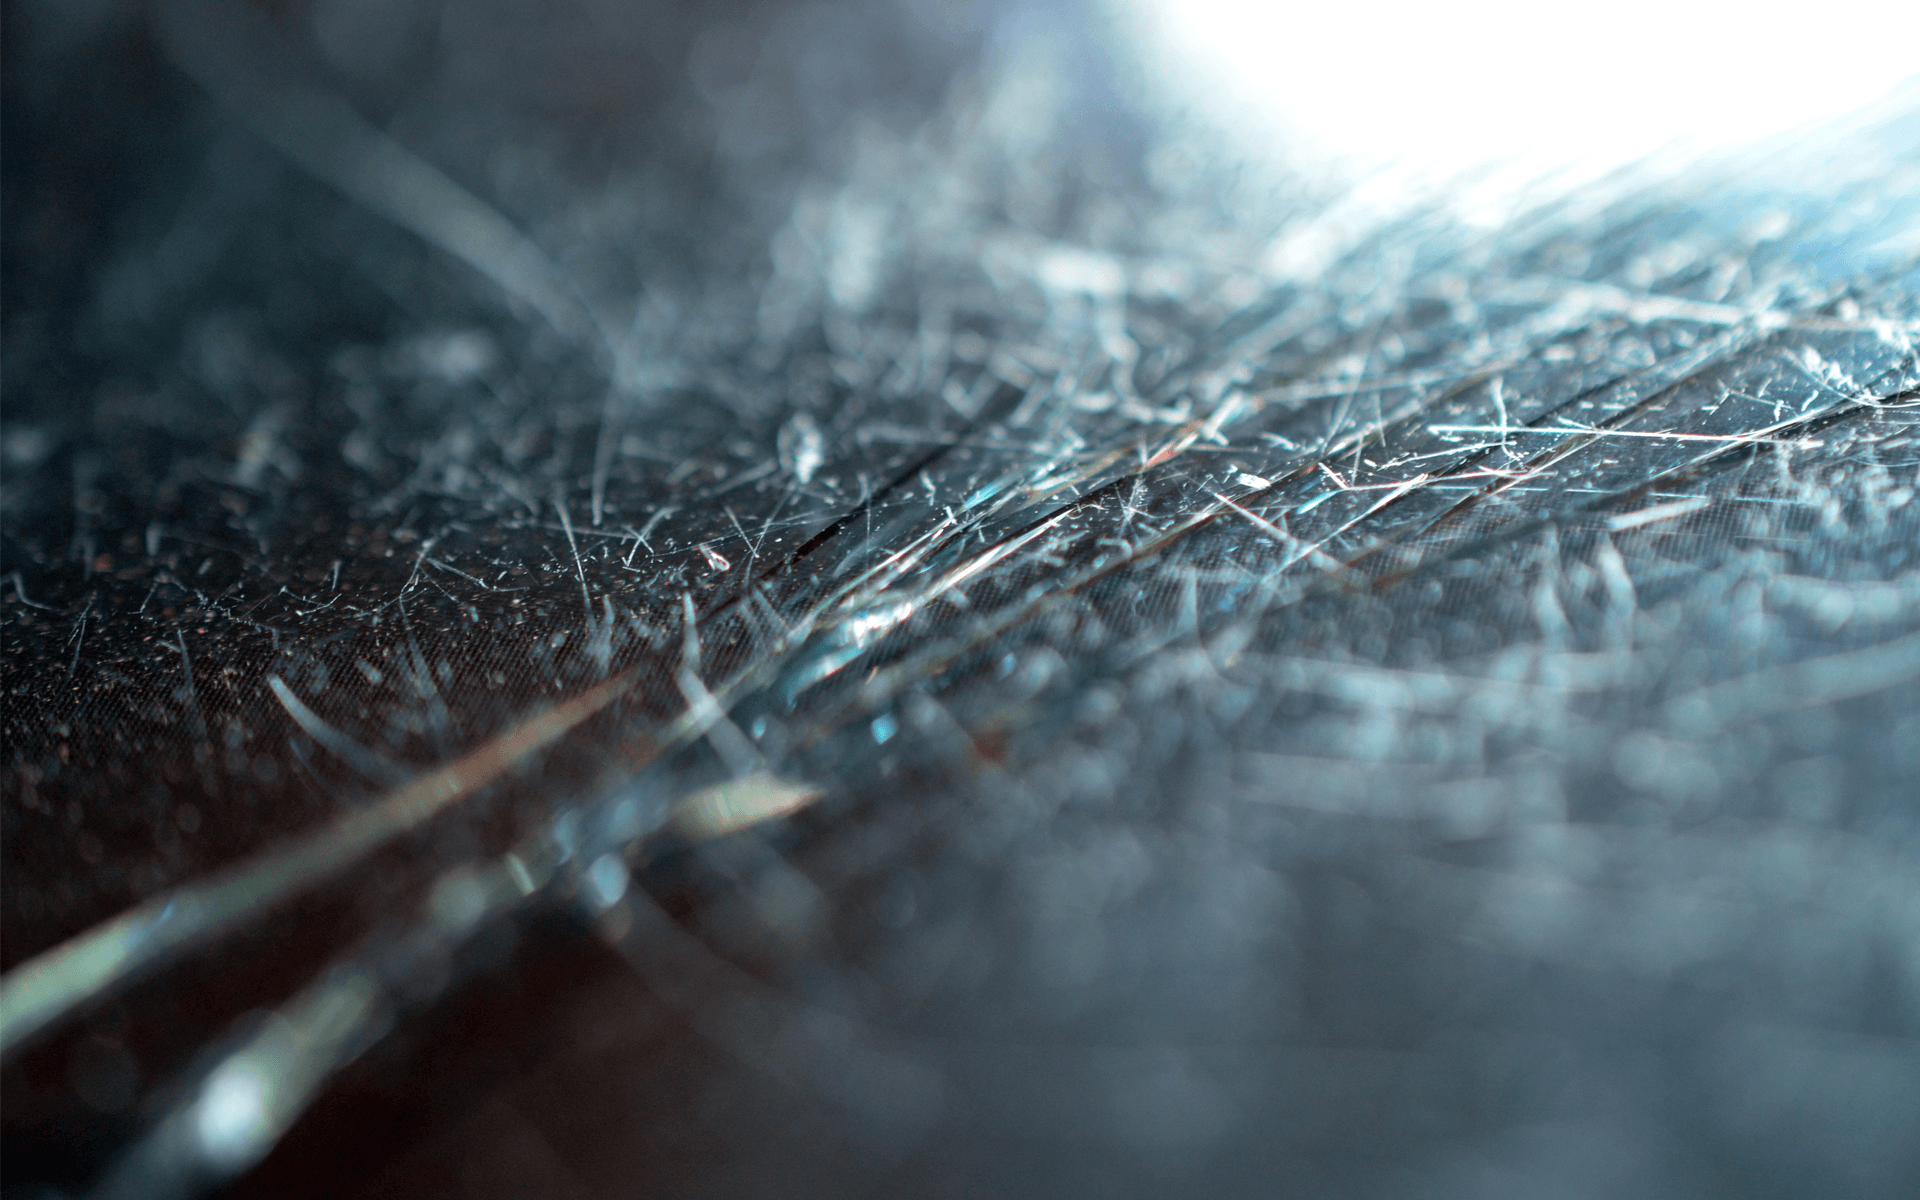 Scratches broken screen iphone macro micro blurred broken glass